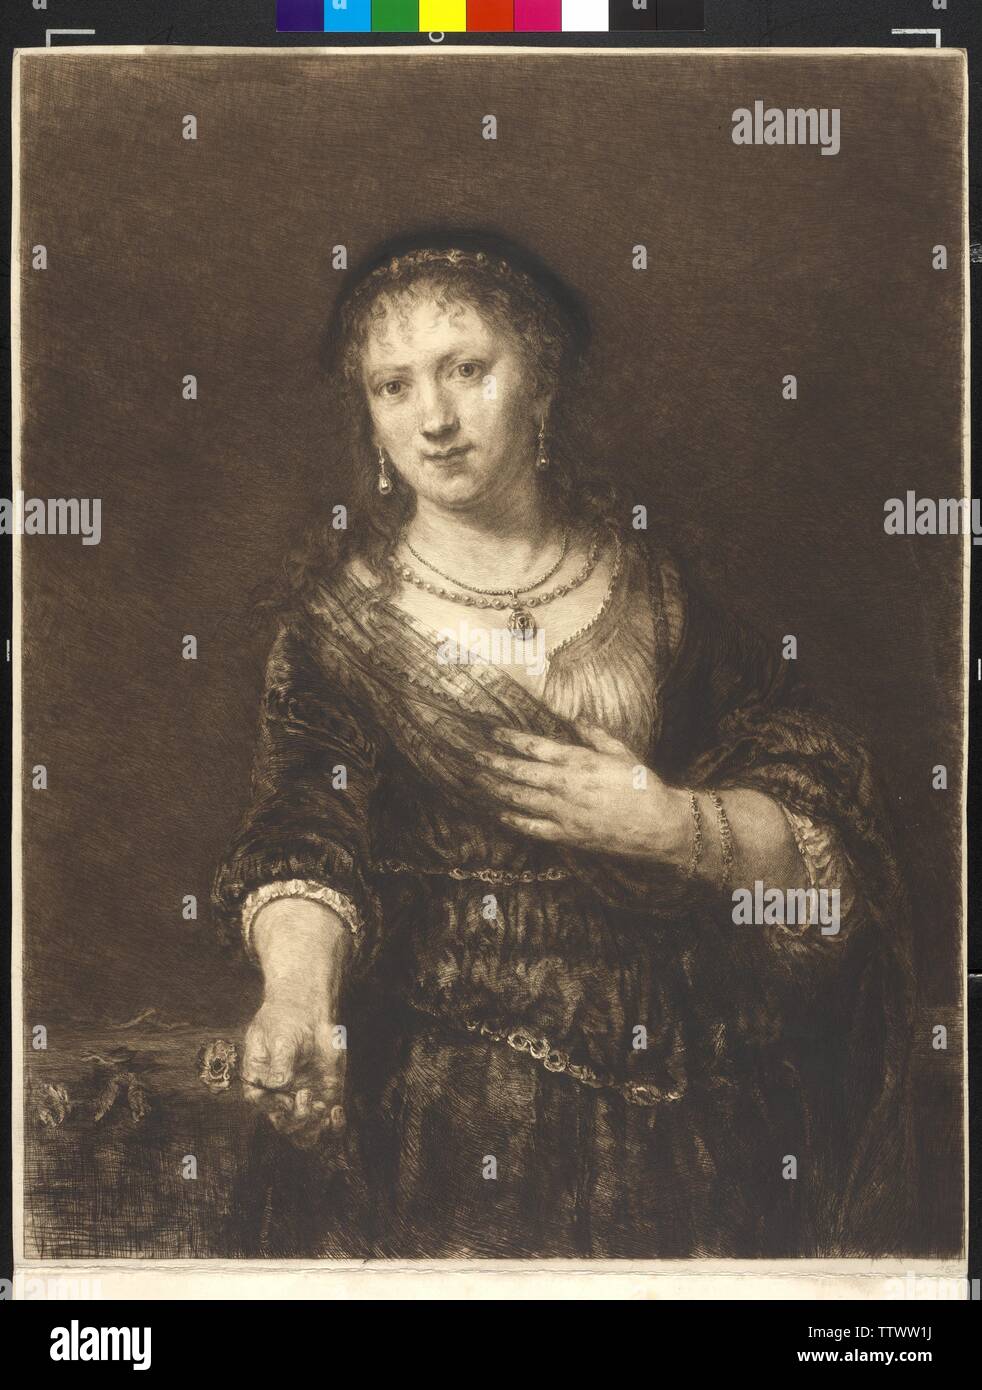 Saskia van Uylenburgh, Radierung von William Unger basierend auf Gemälde von Rembrandt, Additional-Rights - Clearance-Info - Not-Available Stockfoto